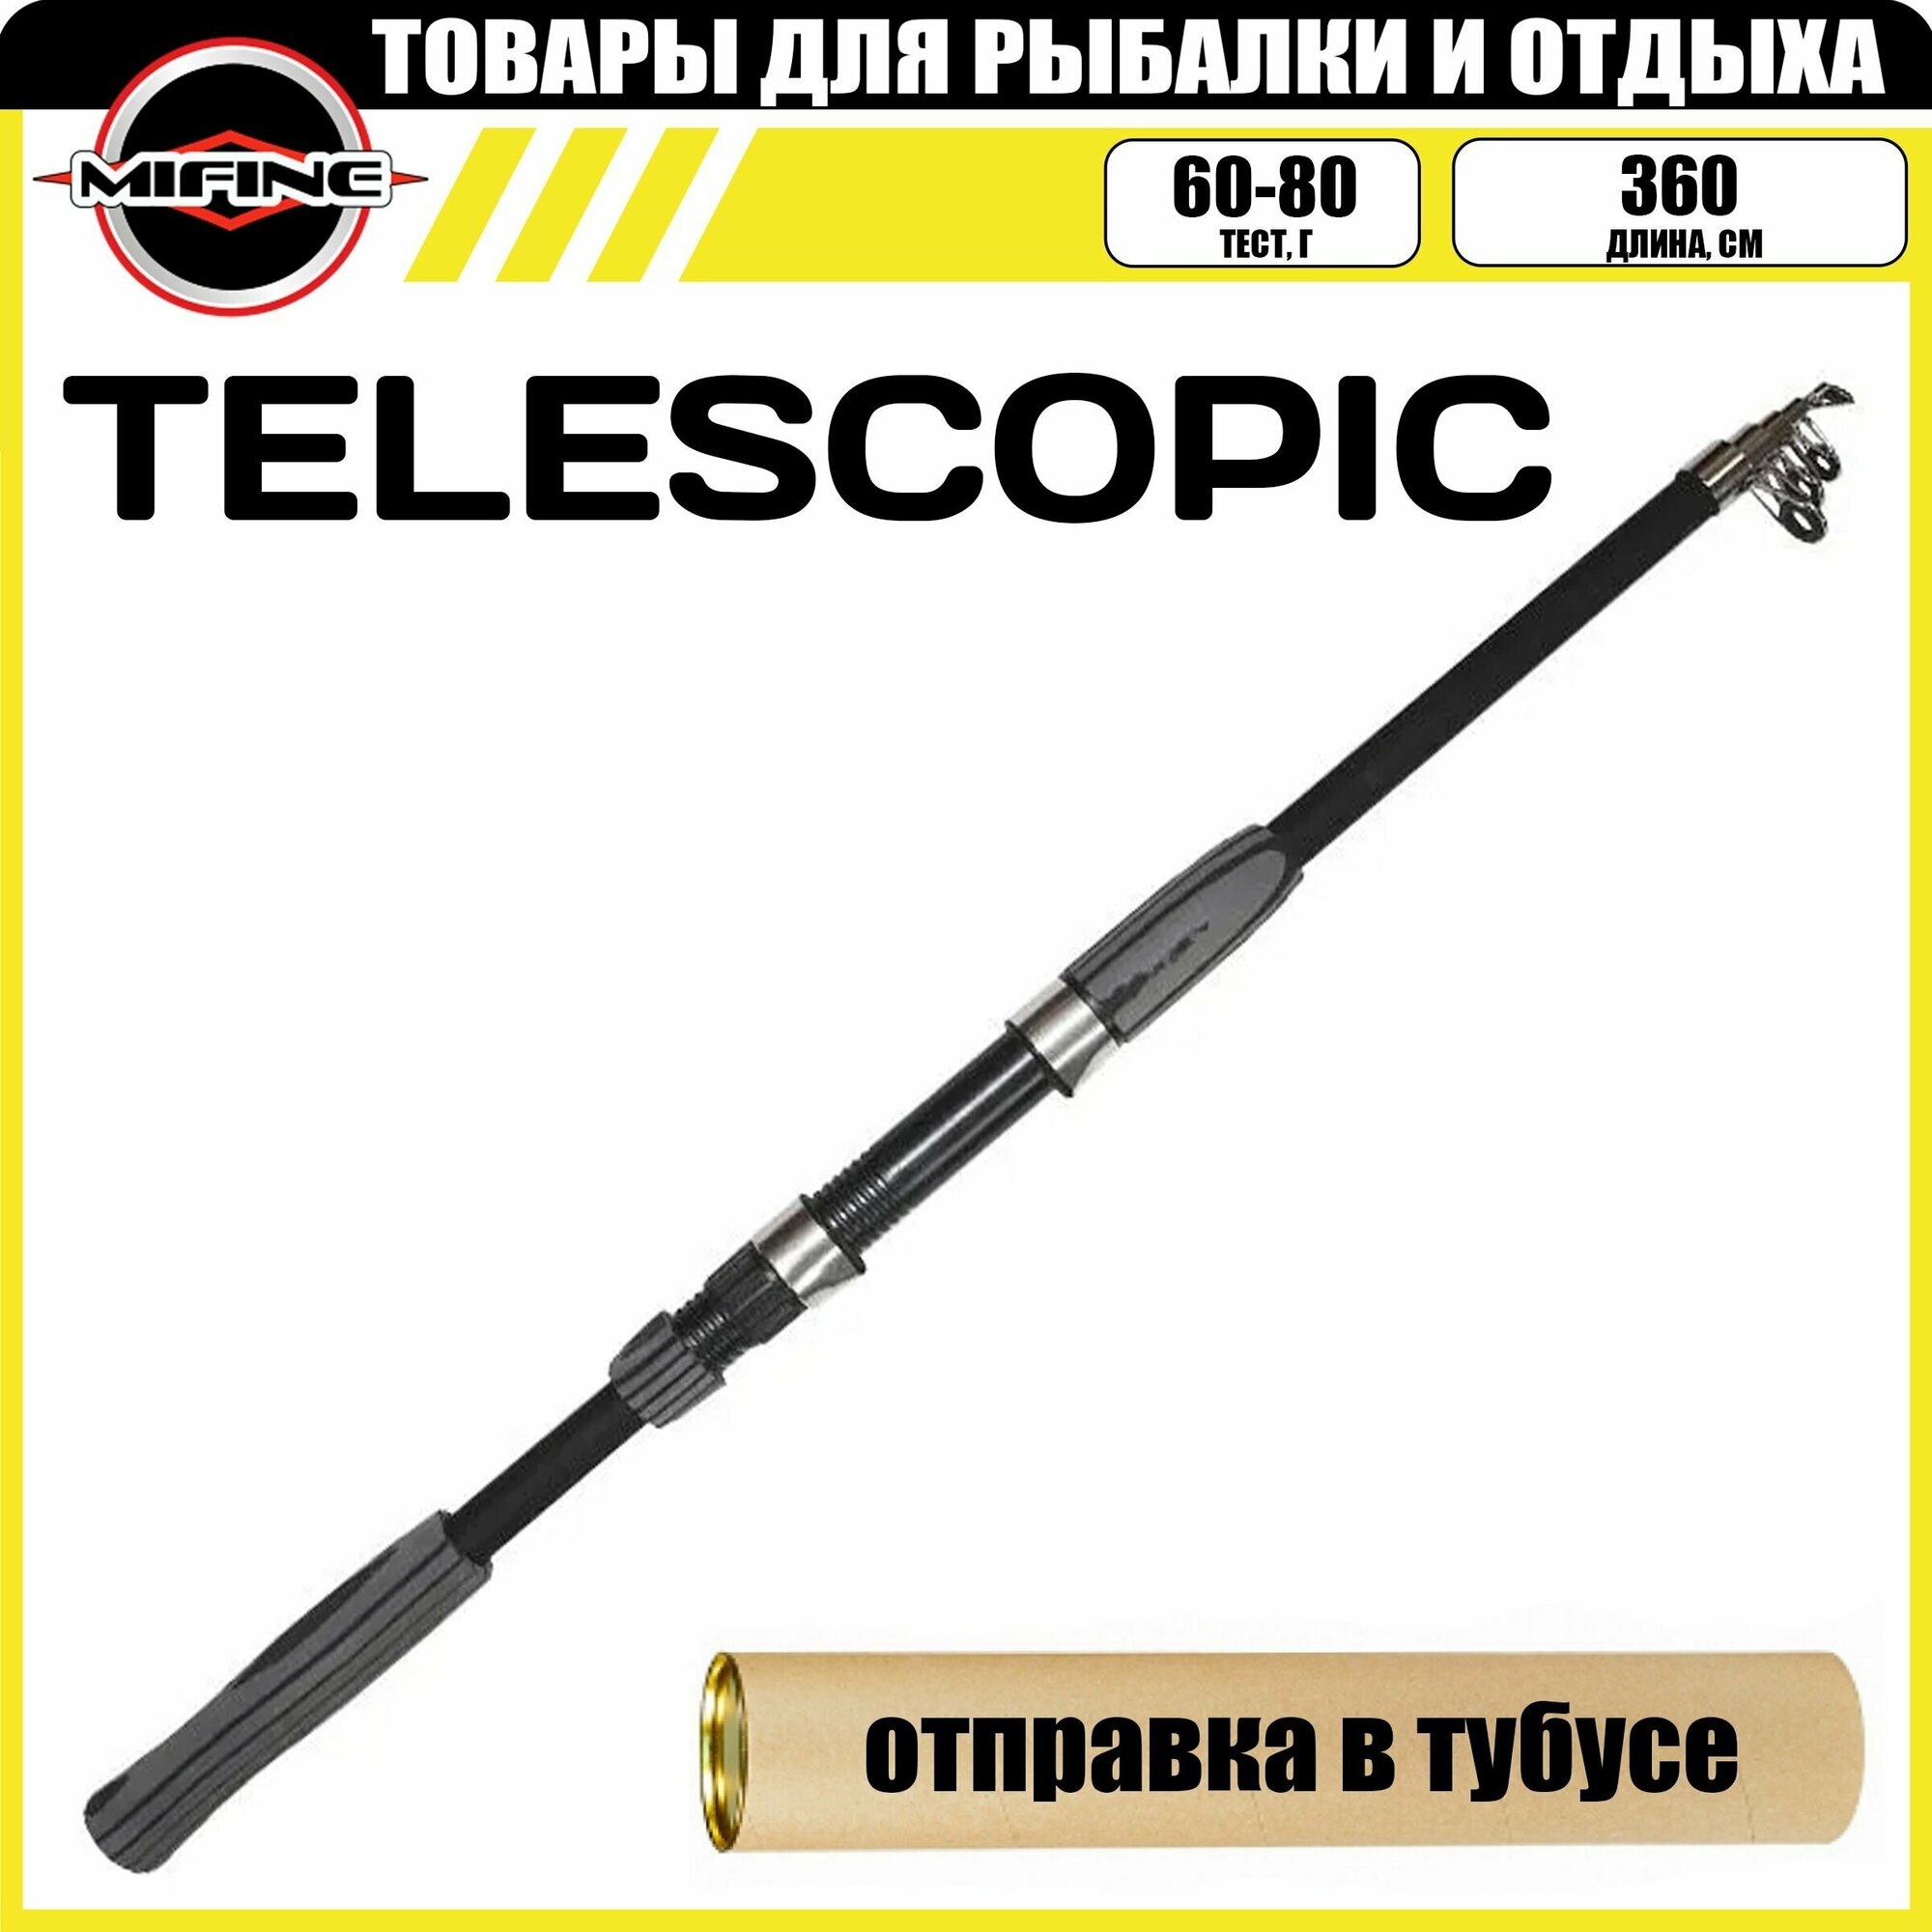 Cпиннинг MIFINE TELESCOPIC телескопический 3.6м (60-80гр), рыболовный, удилище для рыбалки